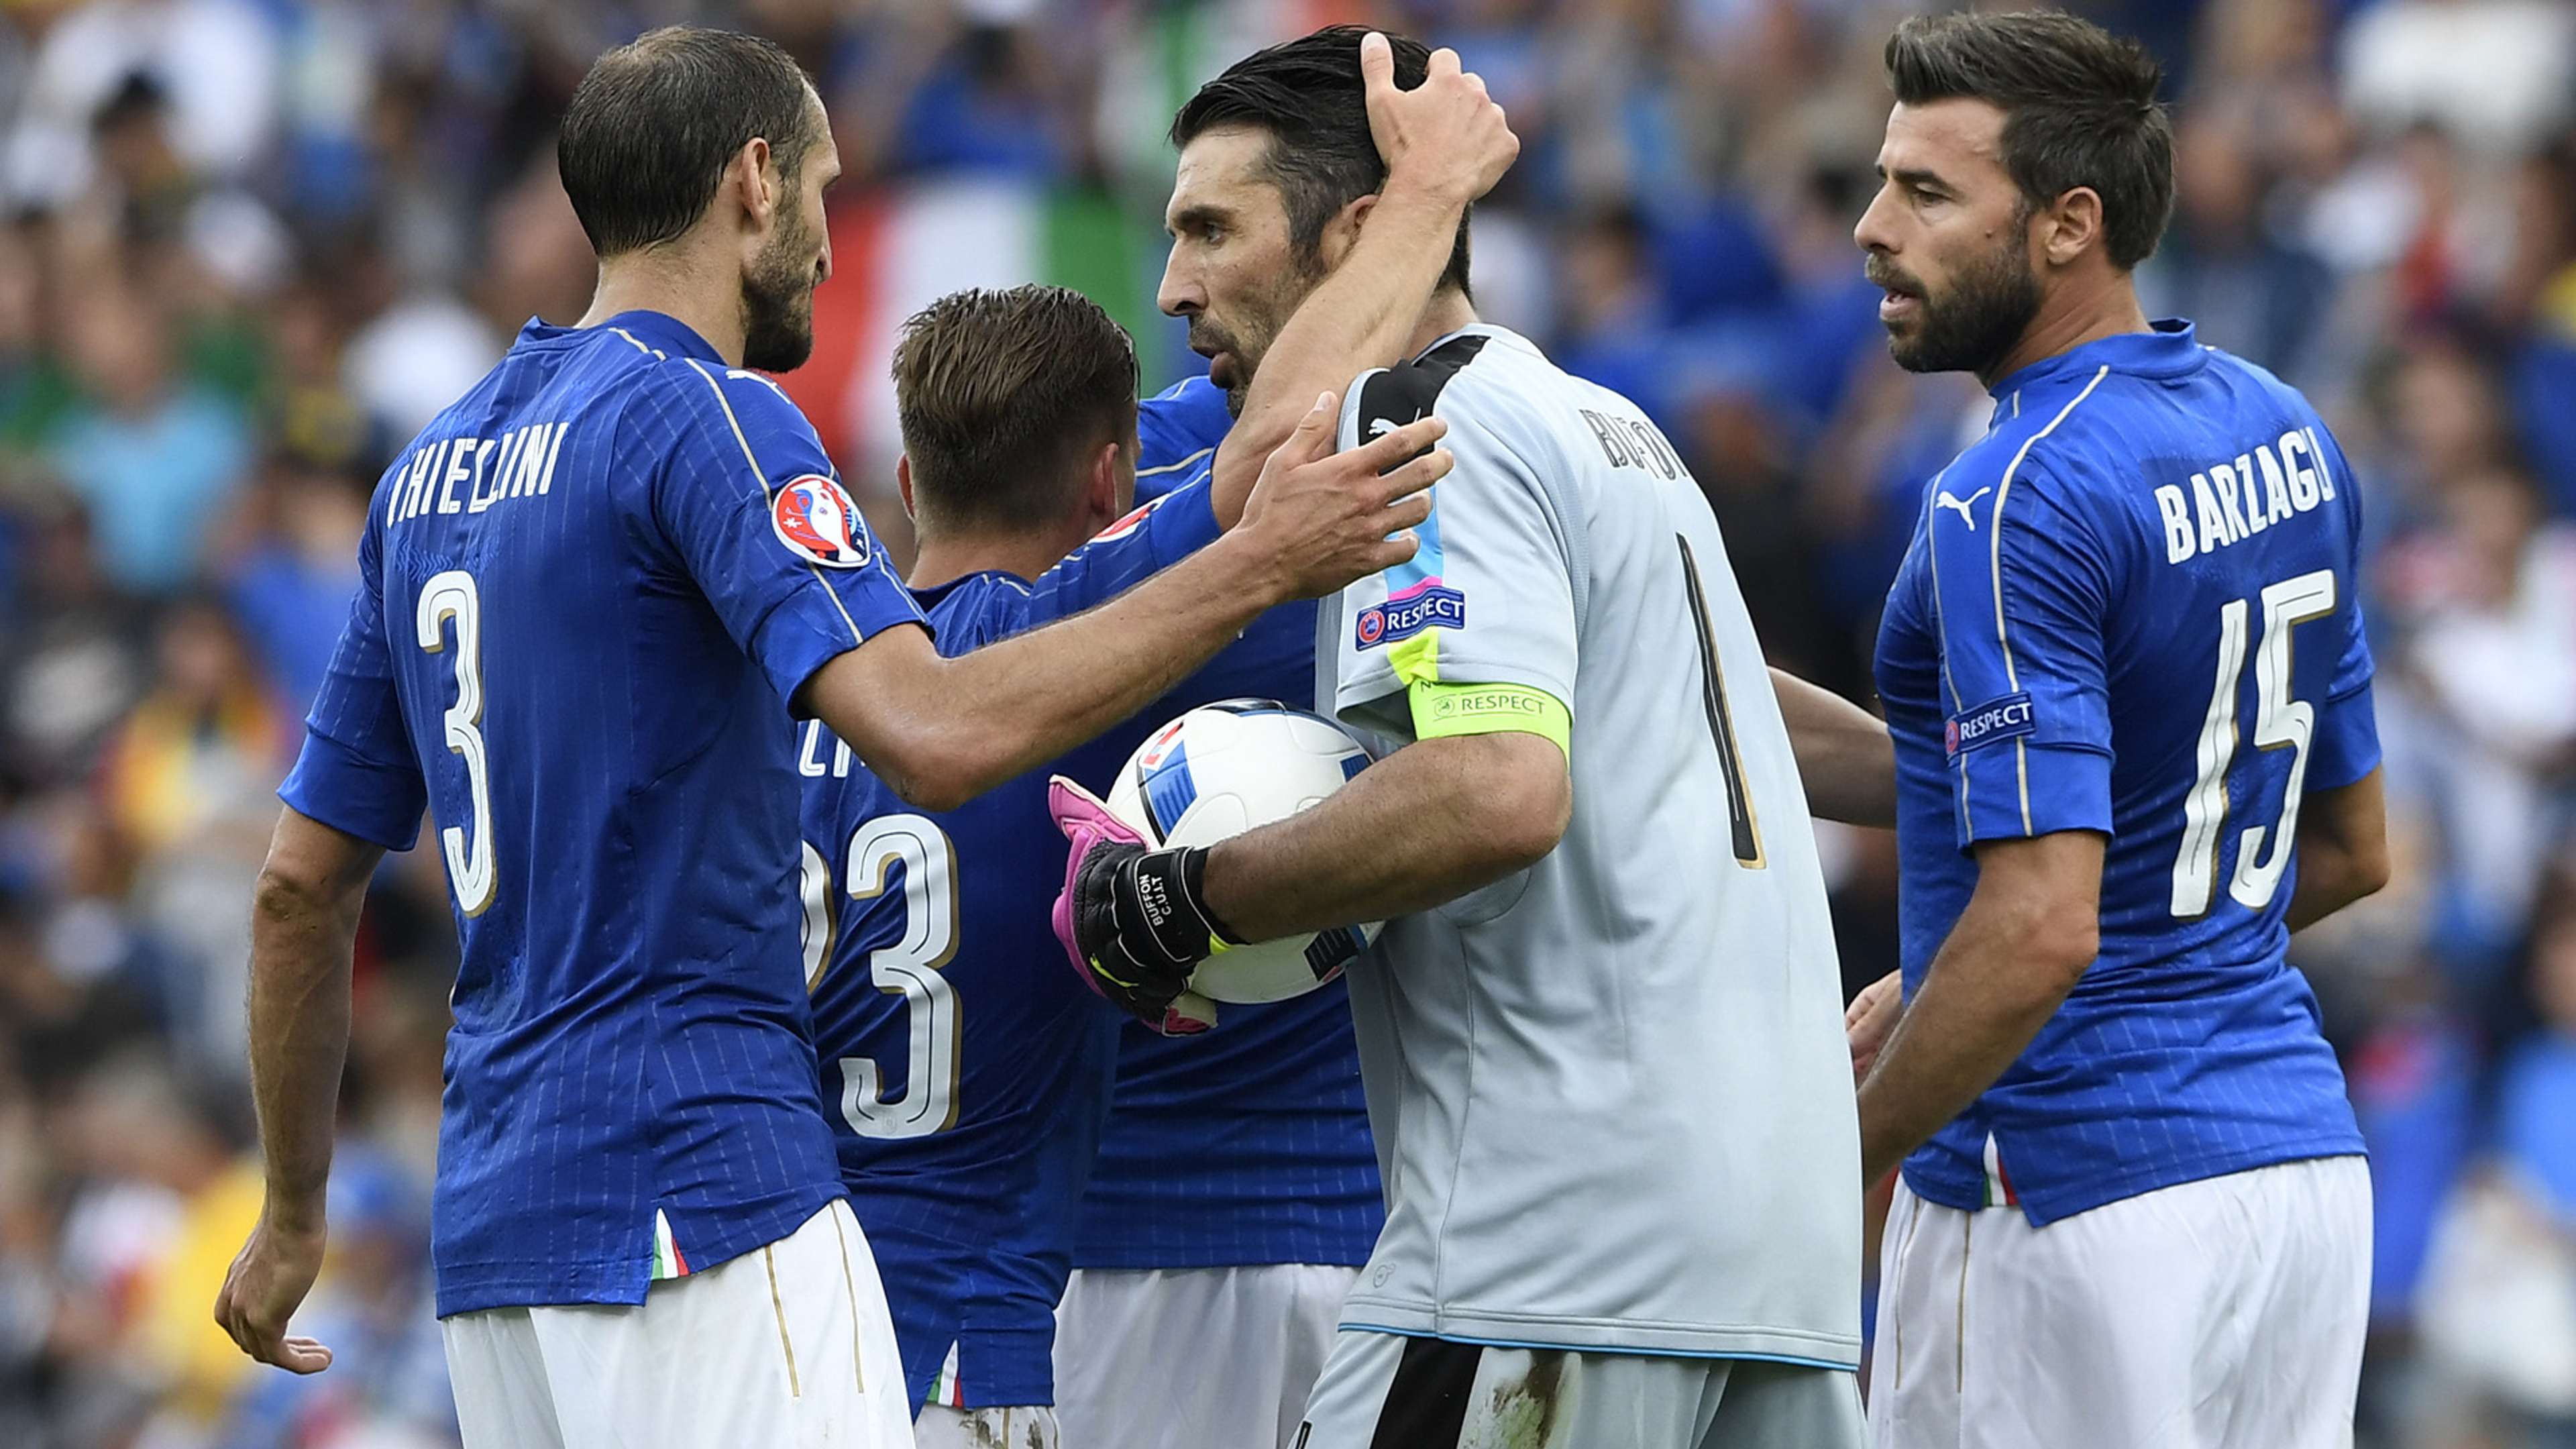 Chiellini Barzagli Buffon Italy celebrating vs Sweden